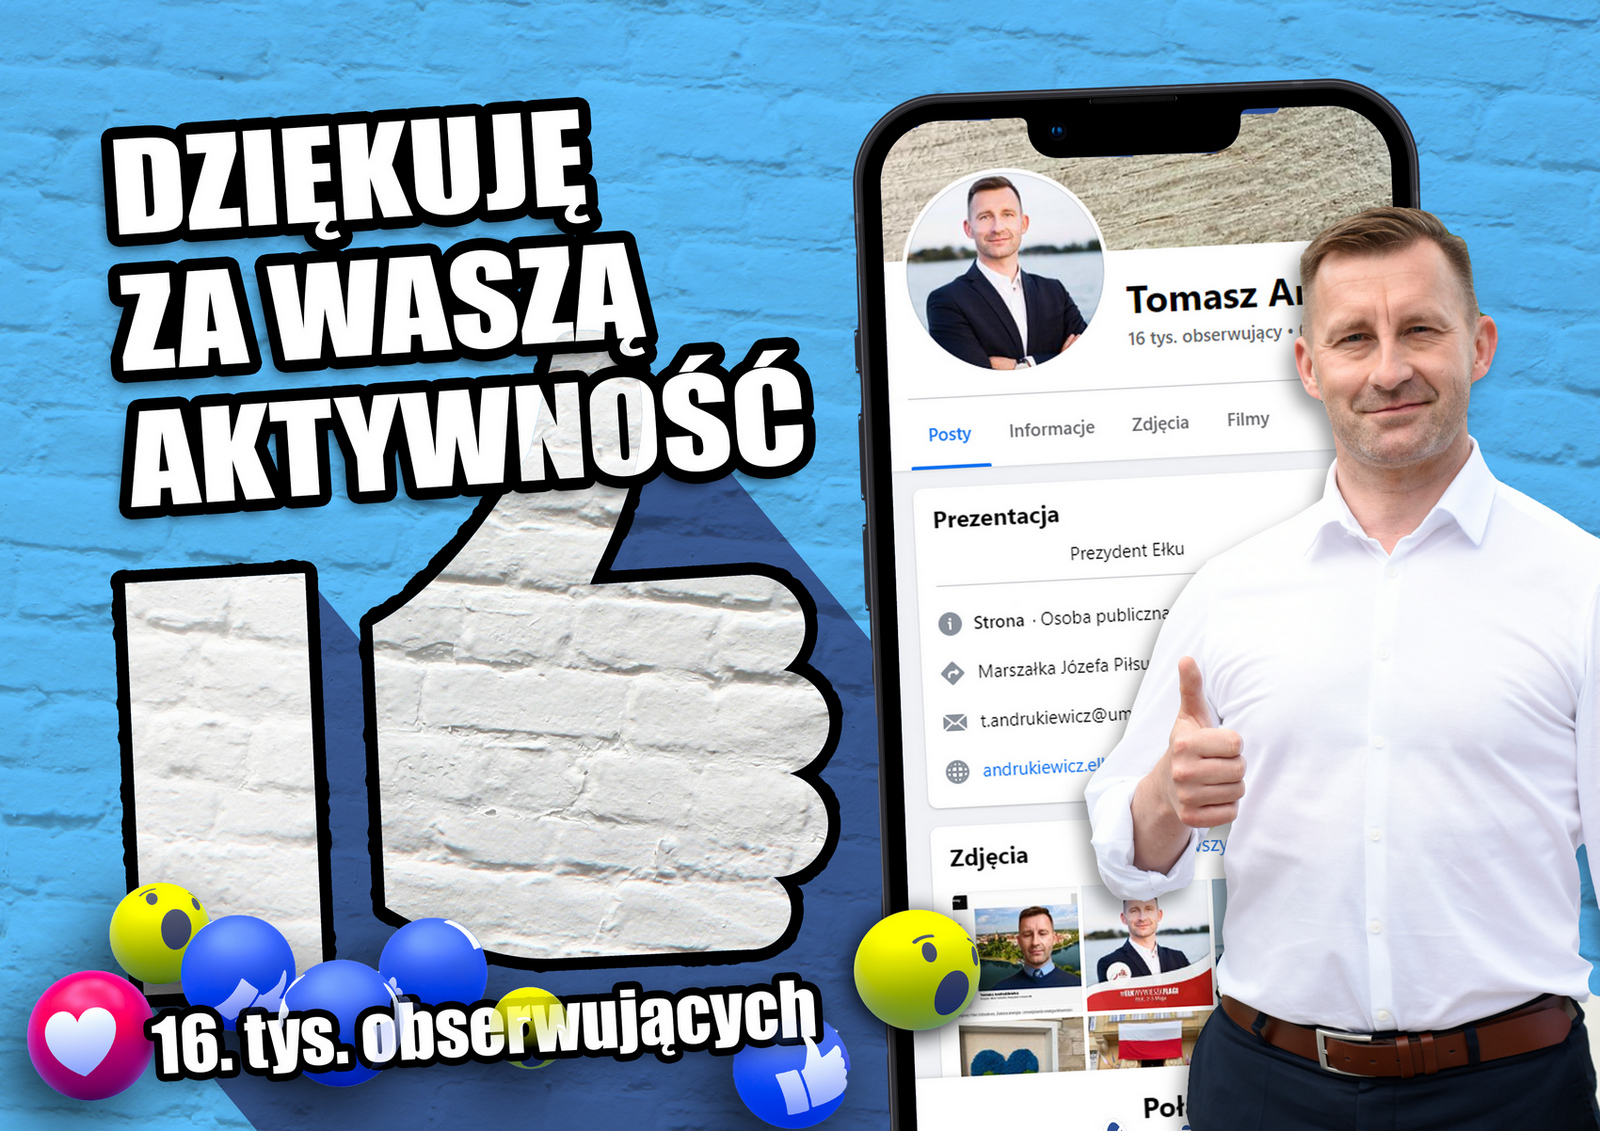 Presidente di Ełk tra i 10 presidenti più popolari nei social media